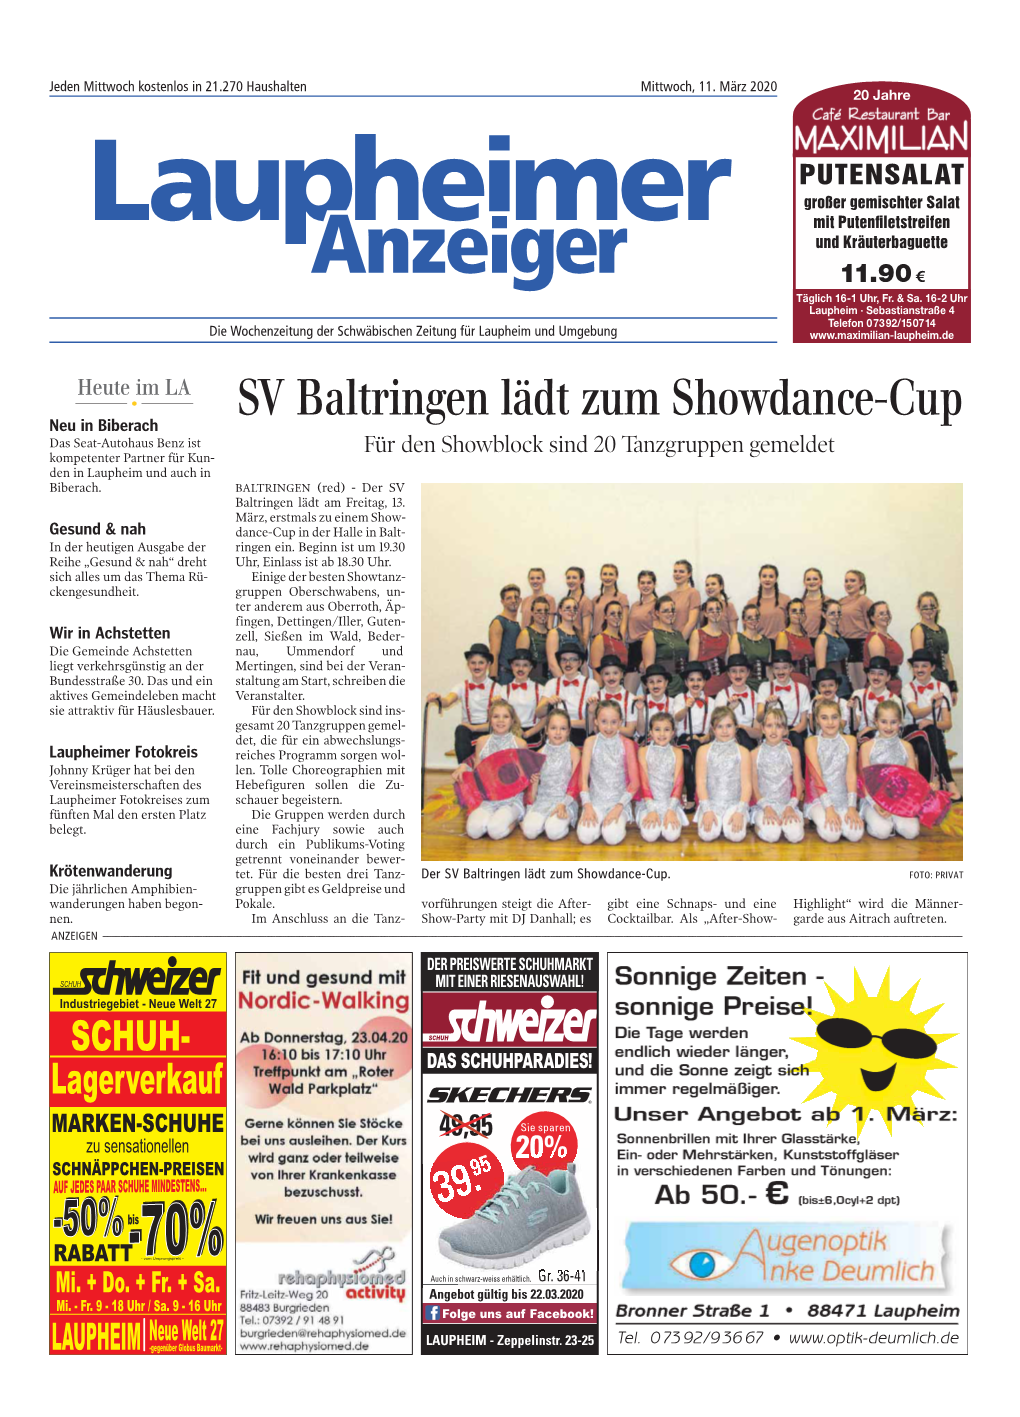 SV Baltringen Lädt Zum Showdance-Cup